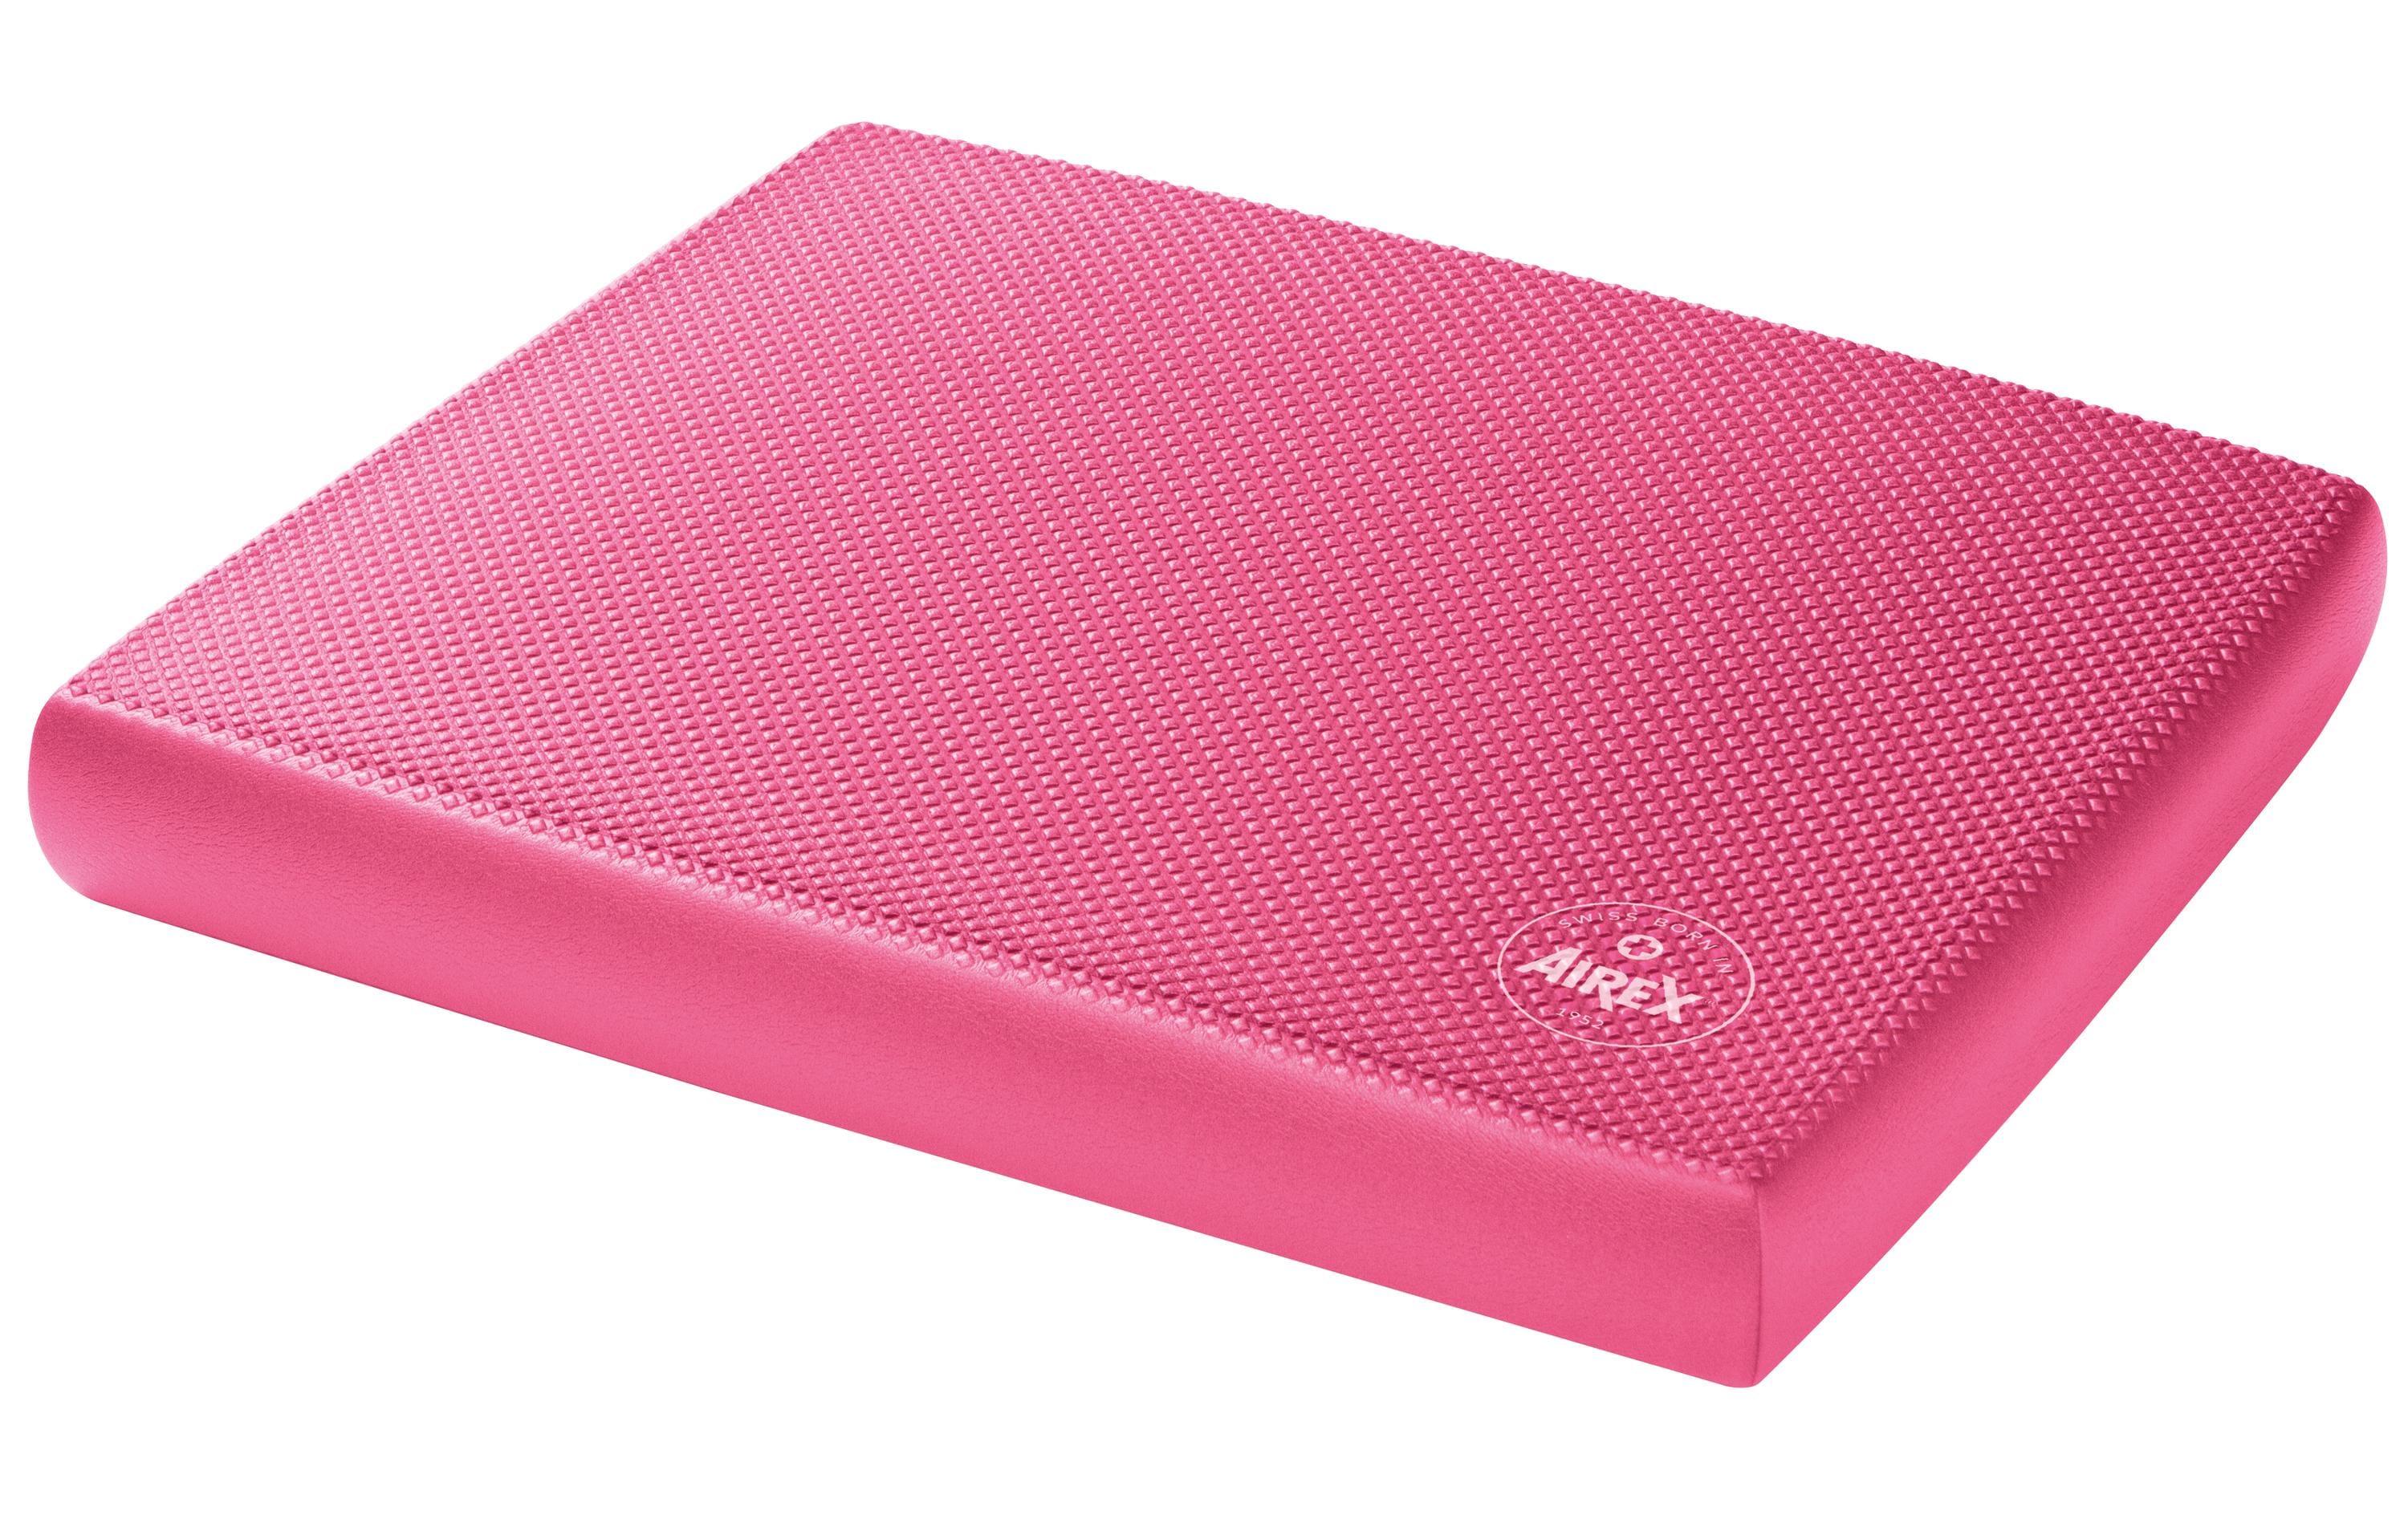 Airex Balance-Pad Elite Pink